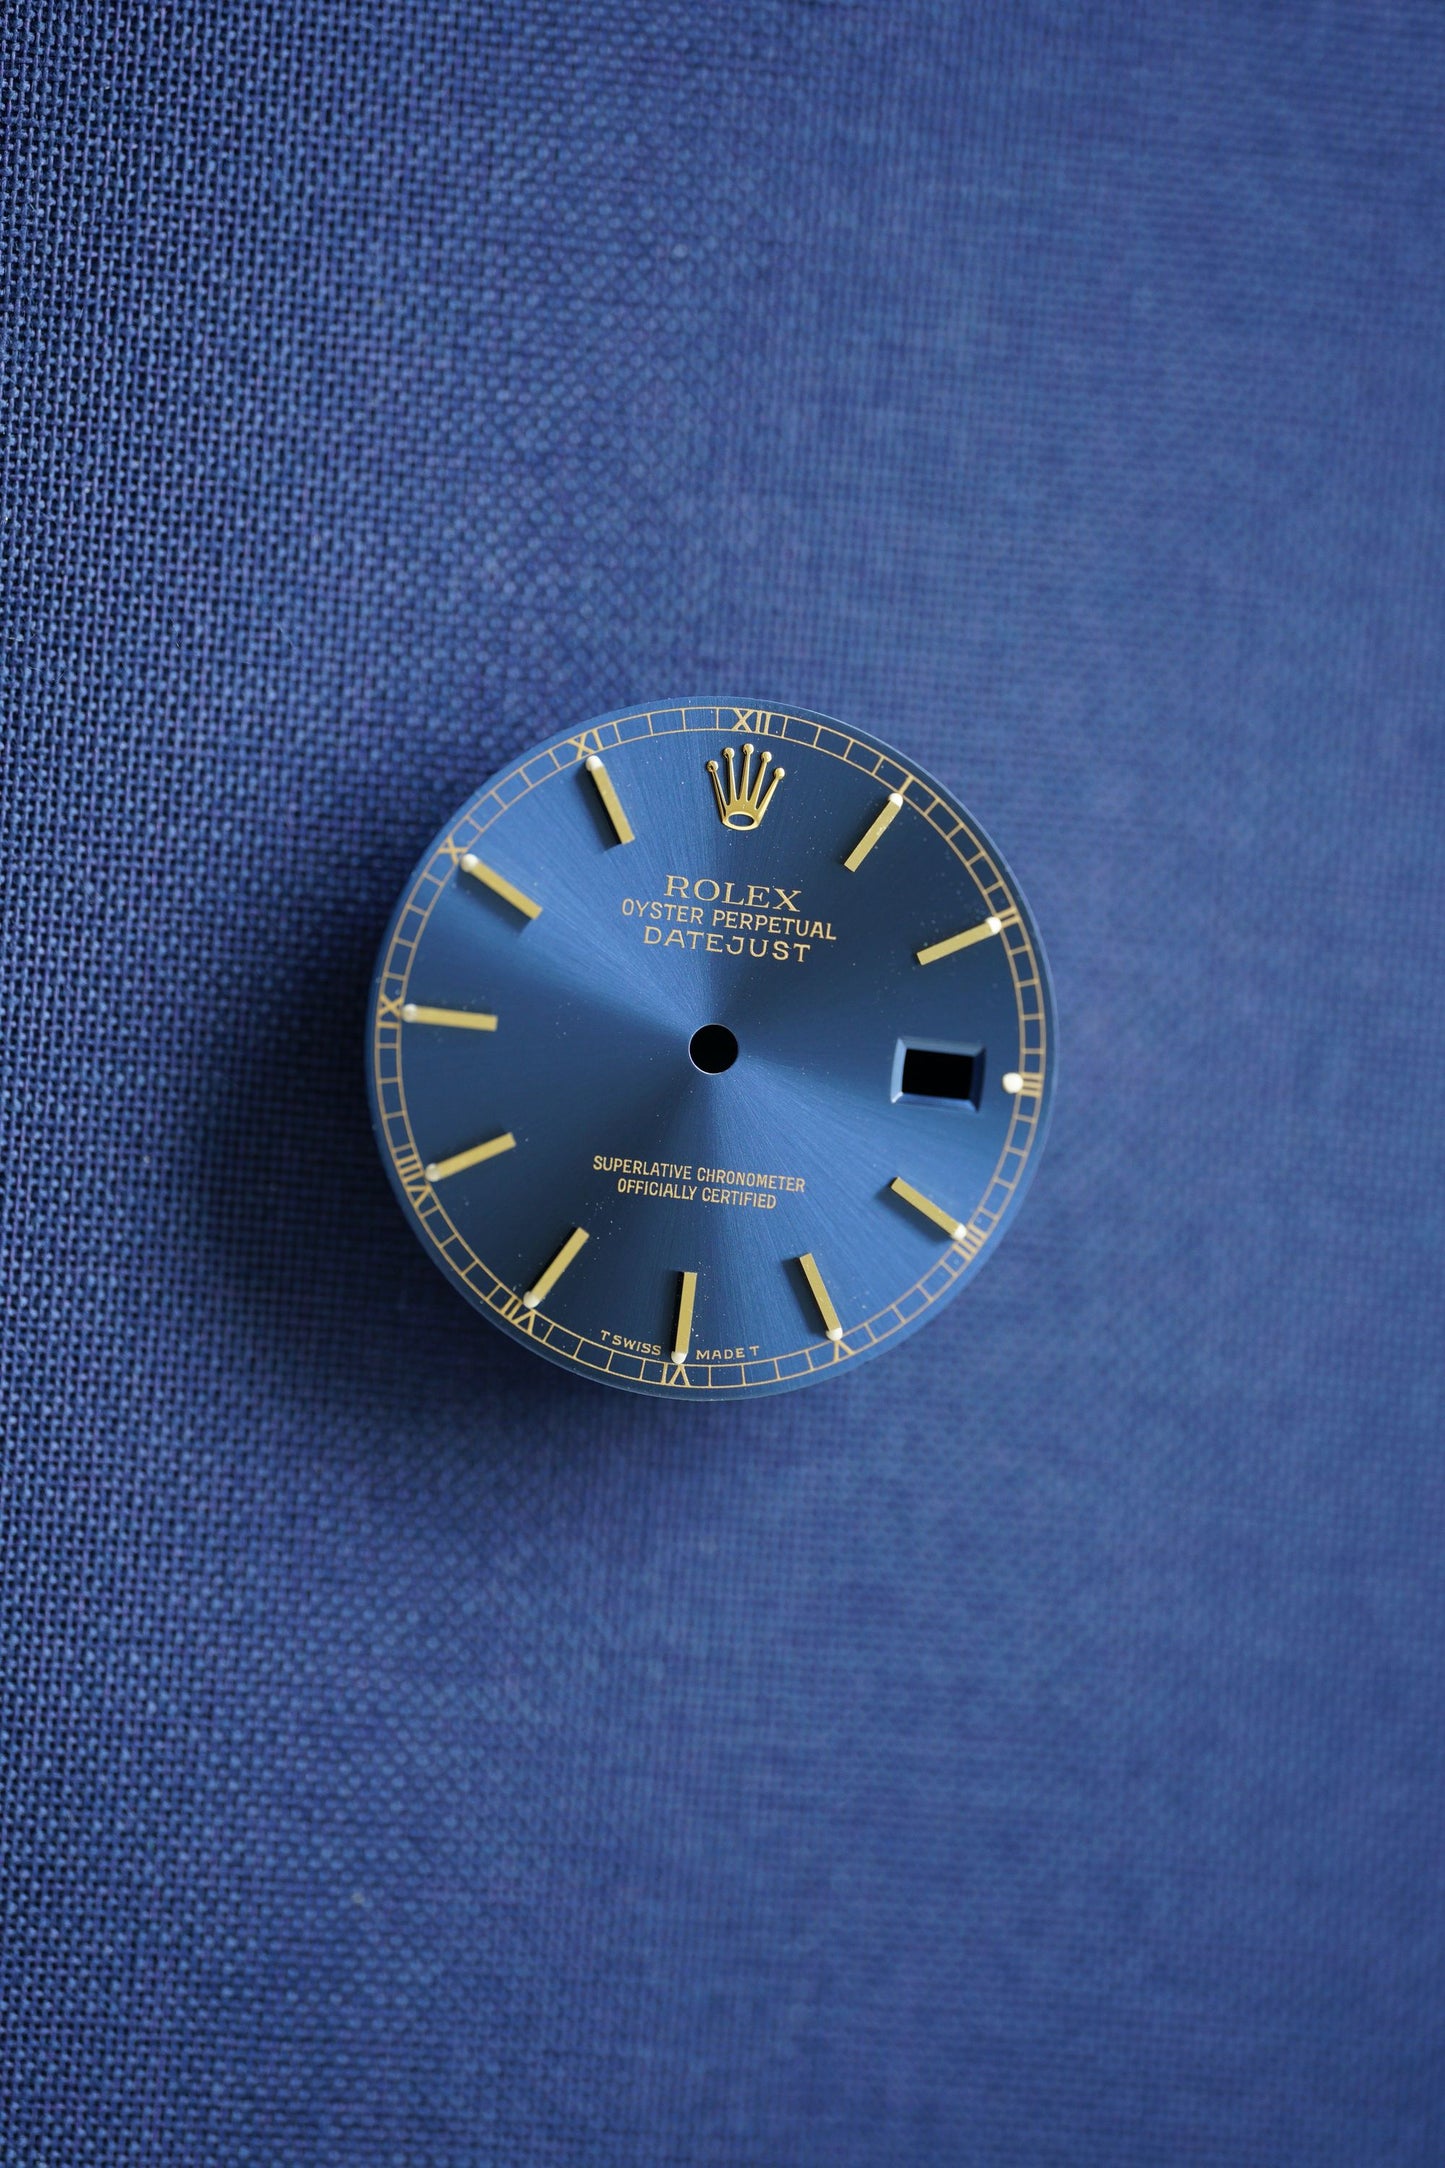 NOS Rolex blaues Zifferblatt für OP Datejust 36 mm Tritium für 16233 / 16238 und andere